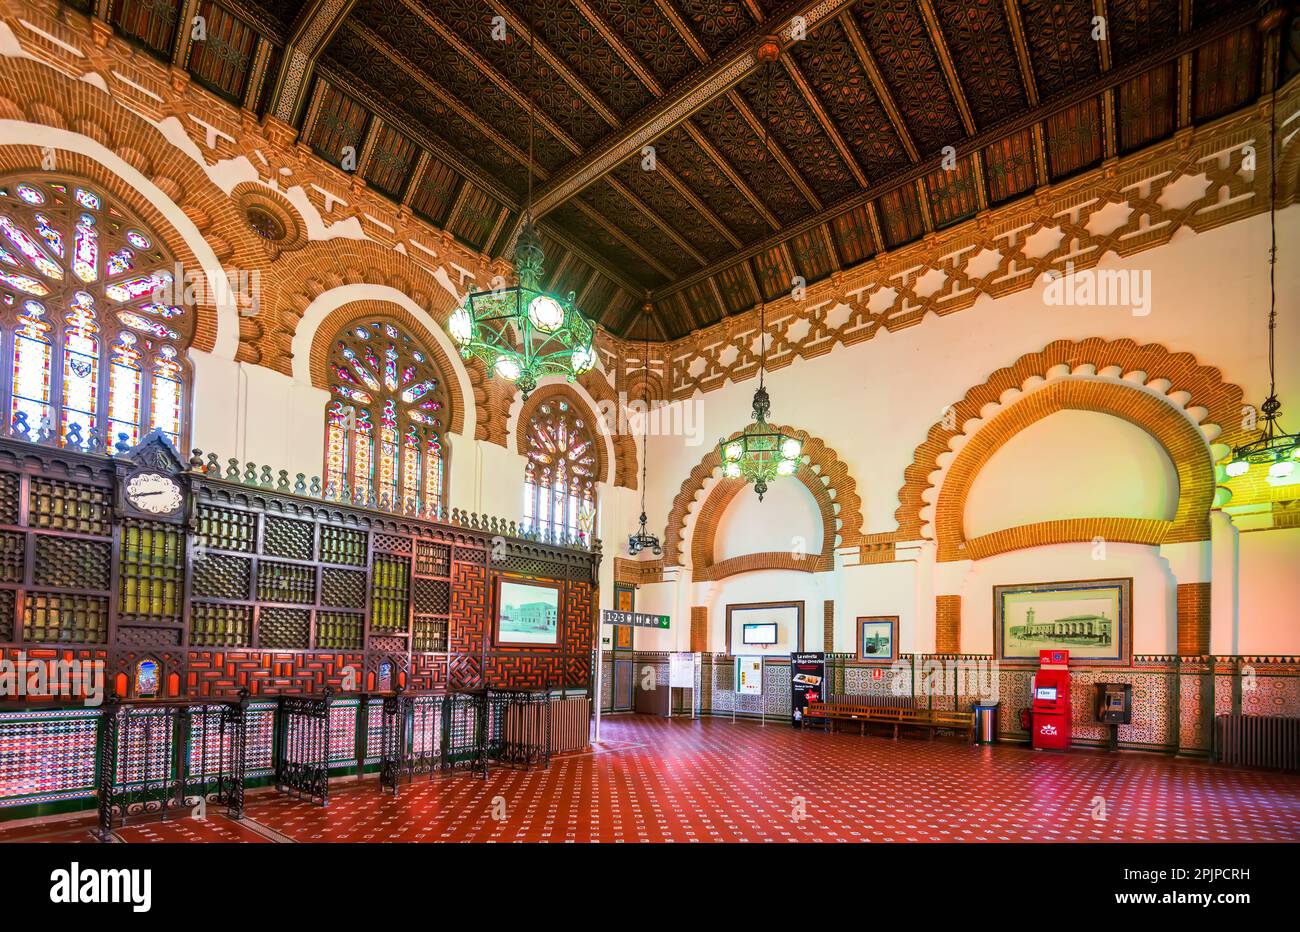 Tolède, Espagne. La gare de Tolède est un centre de transport historique situé au cœur de la vieille ville, construit dans le style néo-Mudejar. Banque D'Images